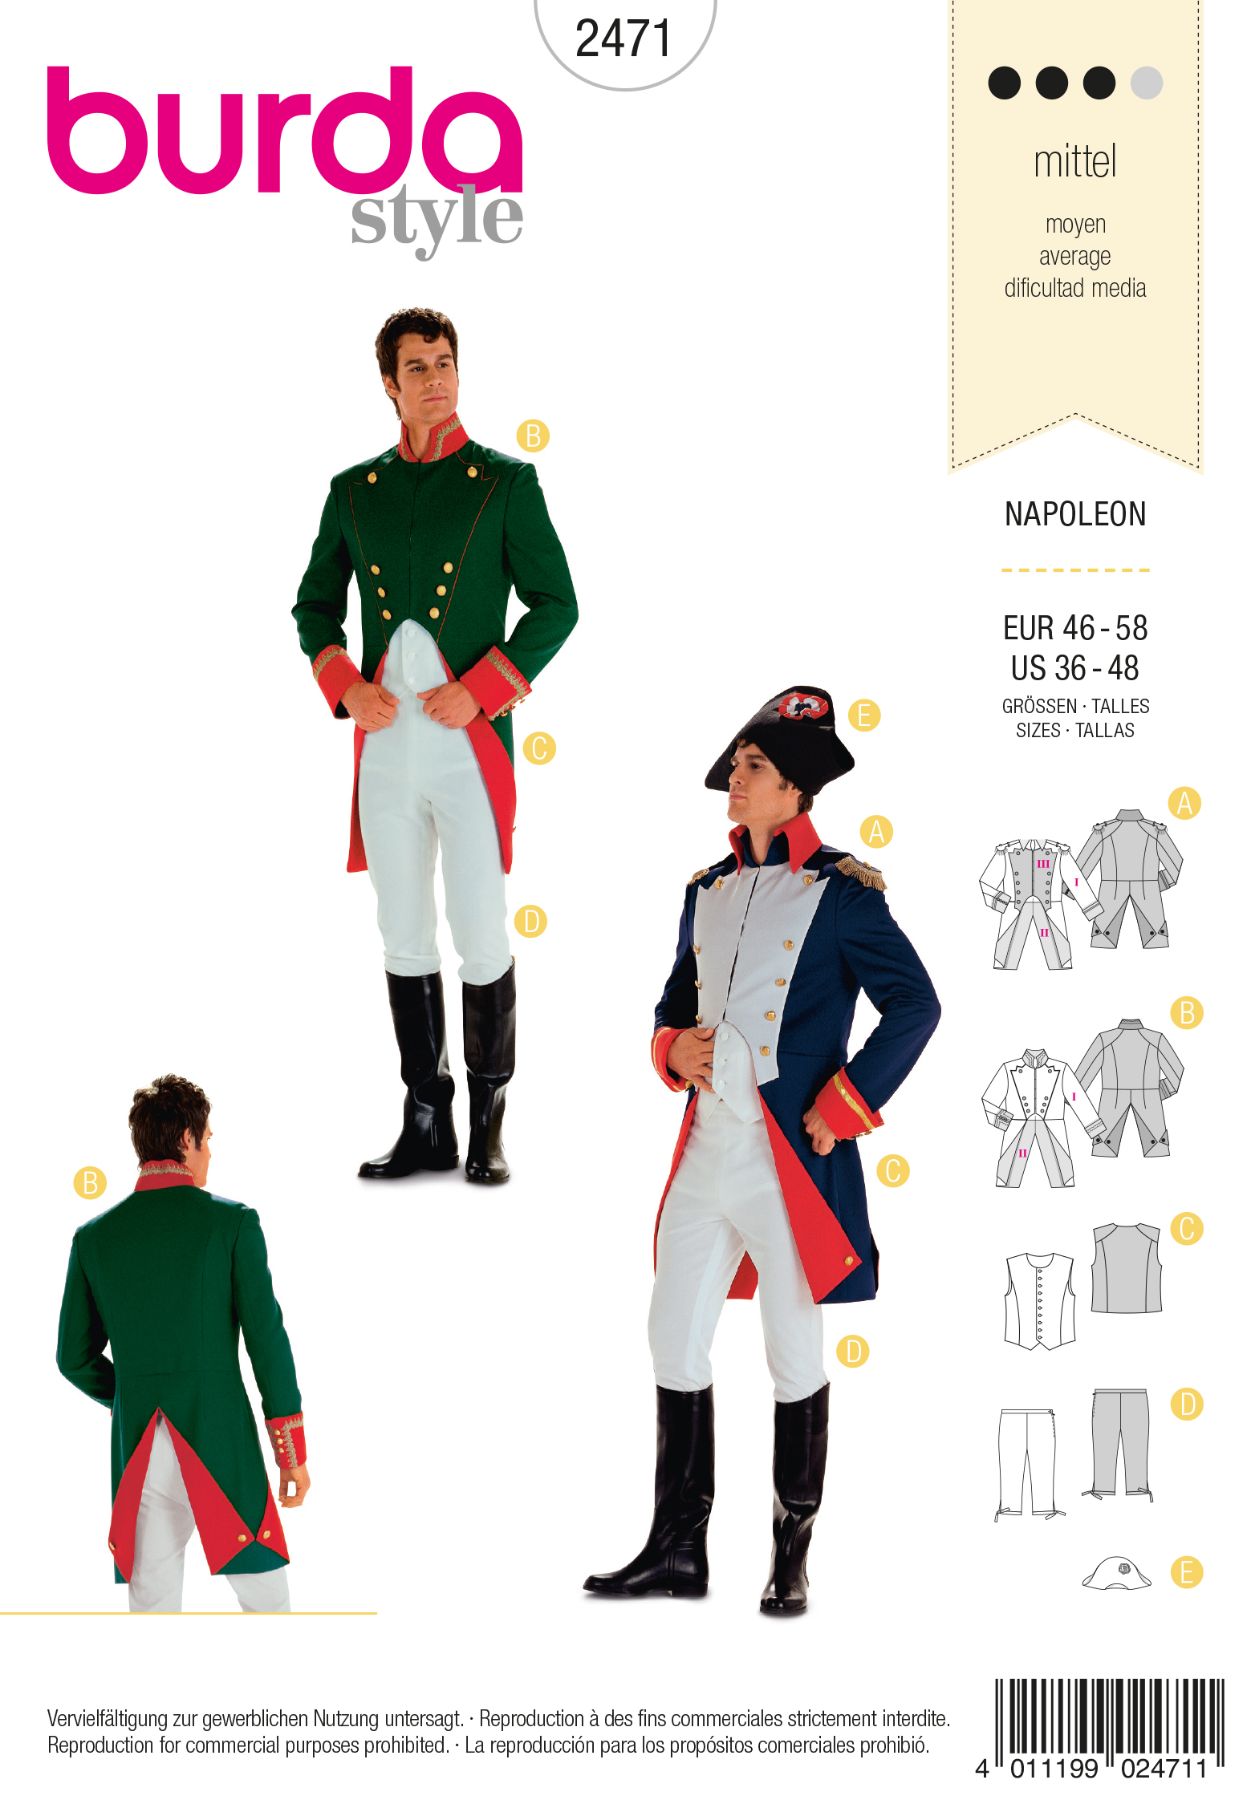 Burda Couture 2471 - Napoleon